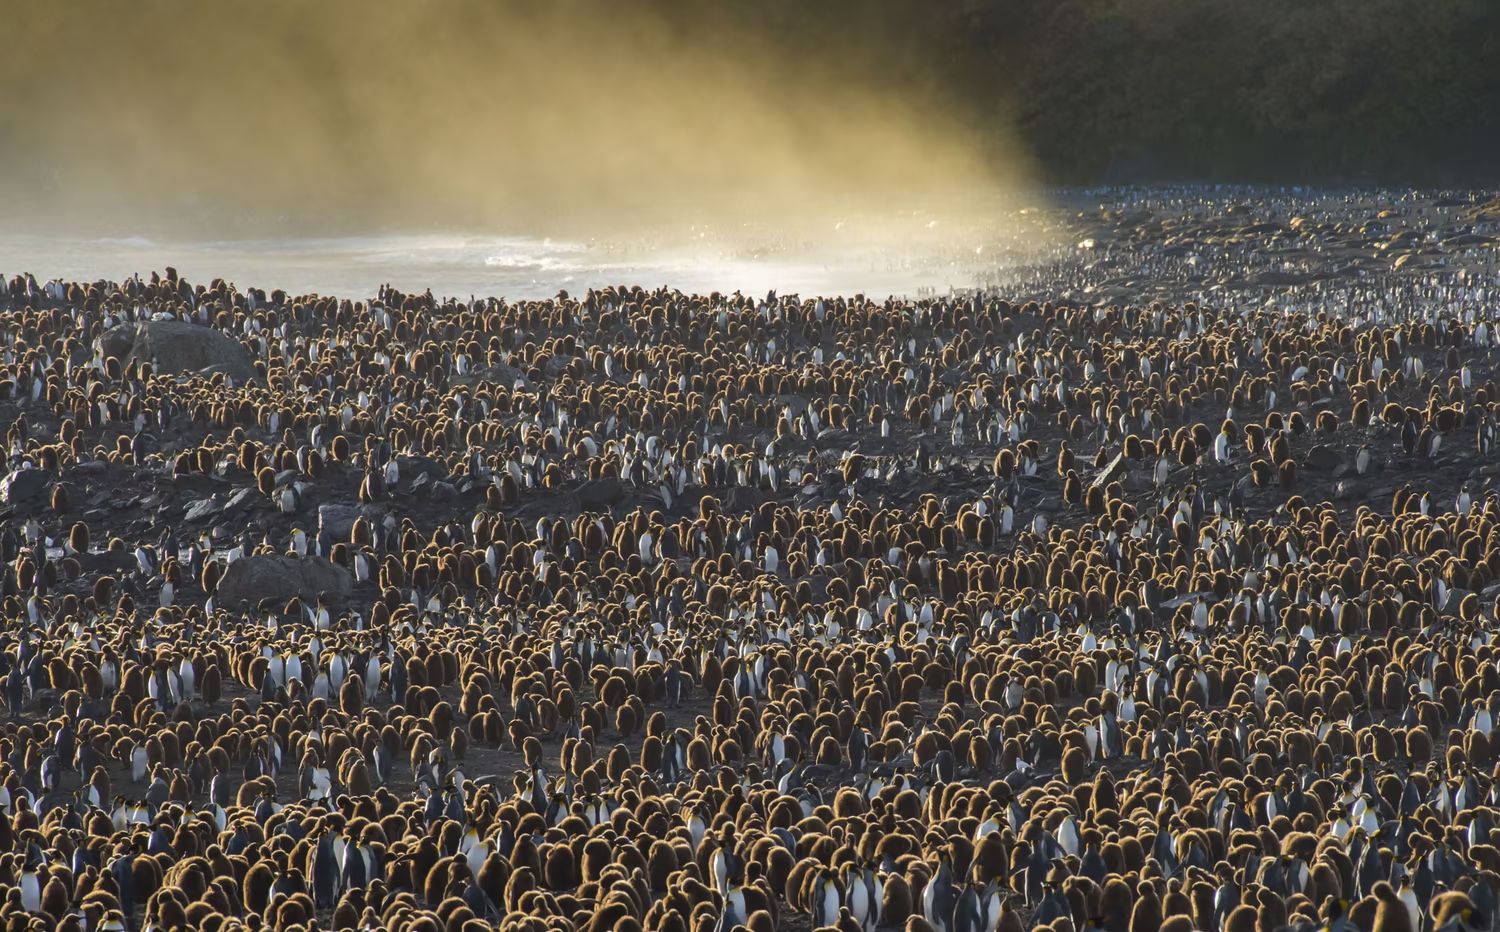 Королевские пингвины собрались вдоль залива Сент-Эндрюс в Южной Георгии / ©Ignacio Palacios / Getty